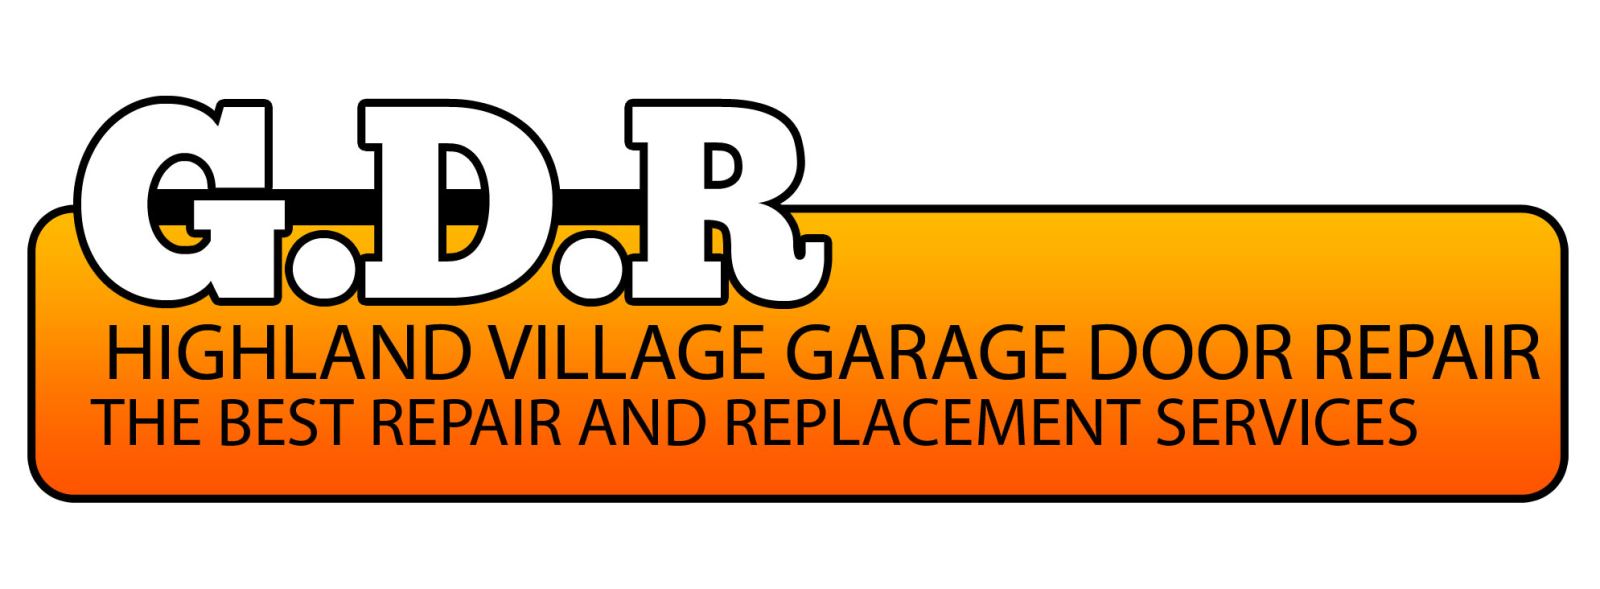  Garage Door Repair Highland Village,TX